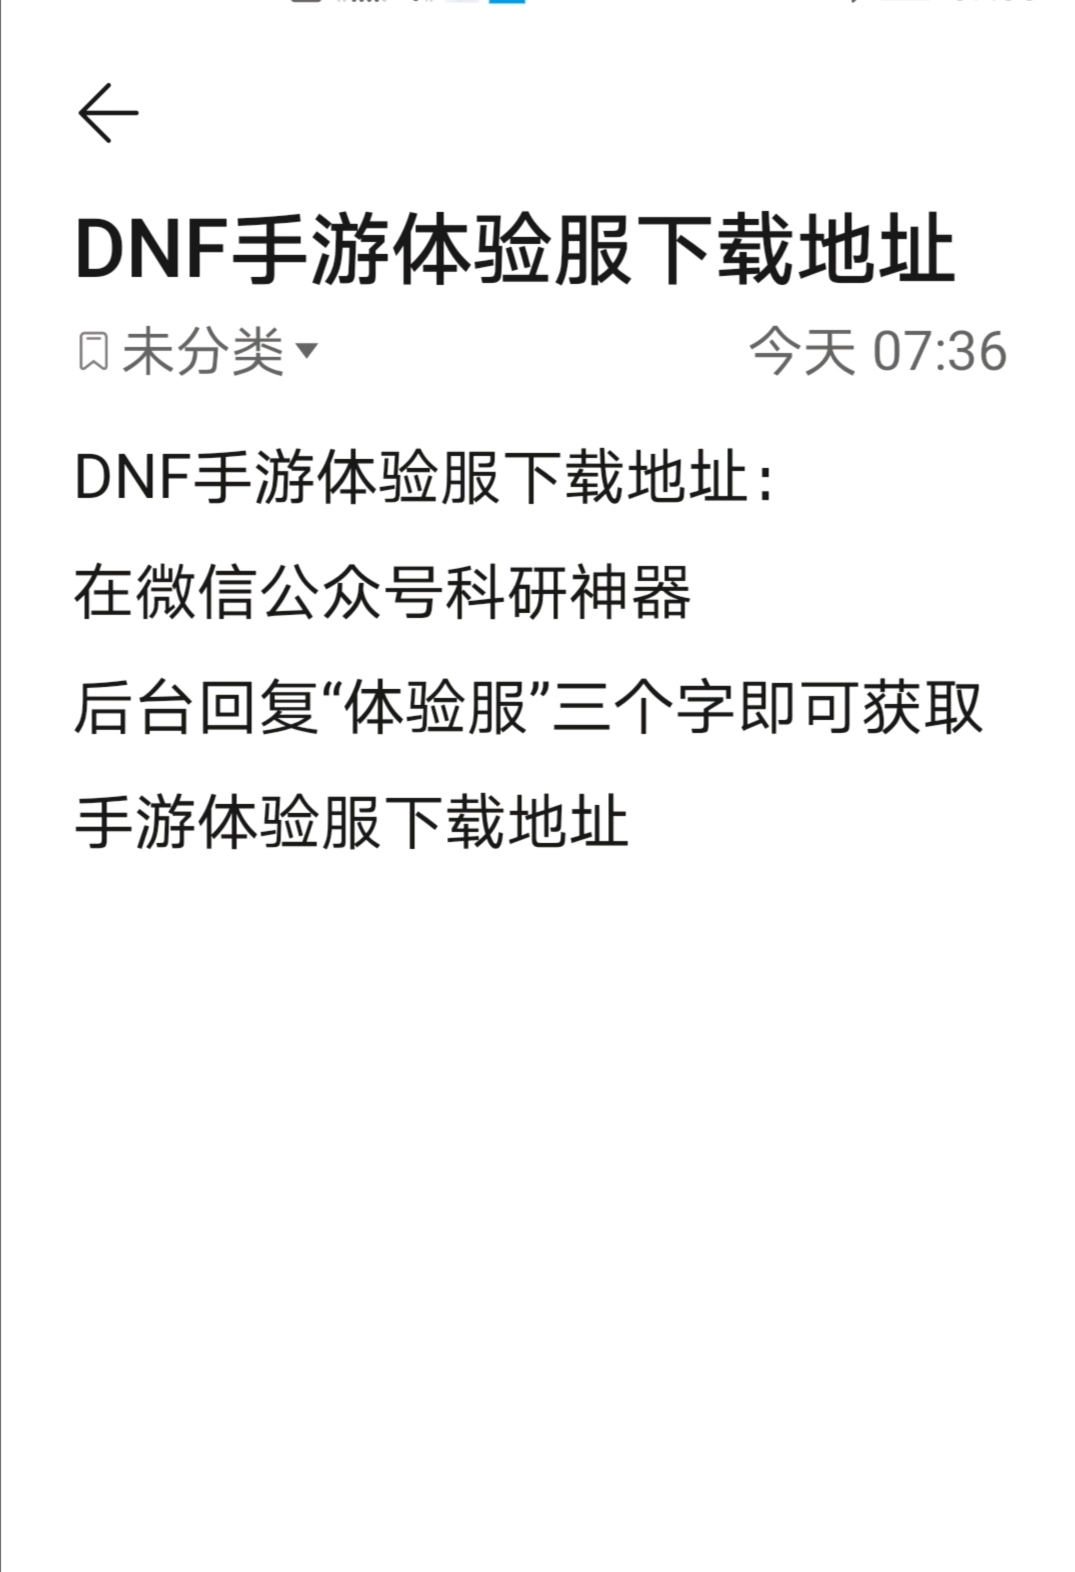 DNF手游_dnf手游公测时间_手游按键精灵dnf跳过非法